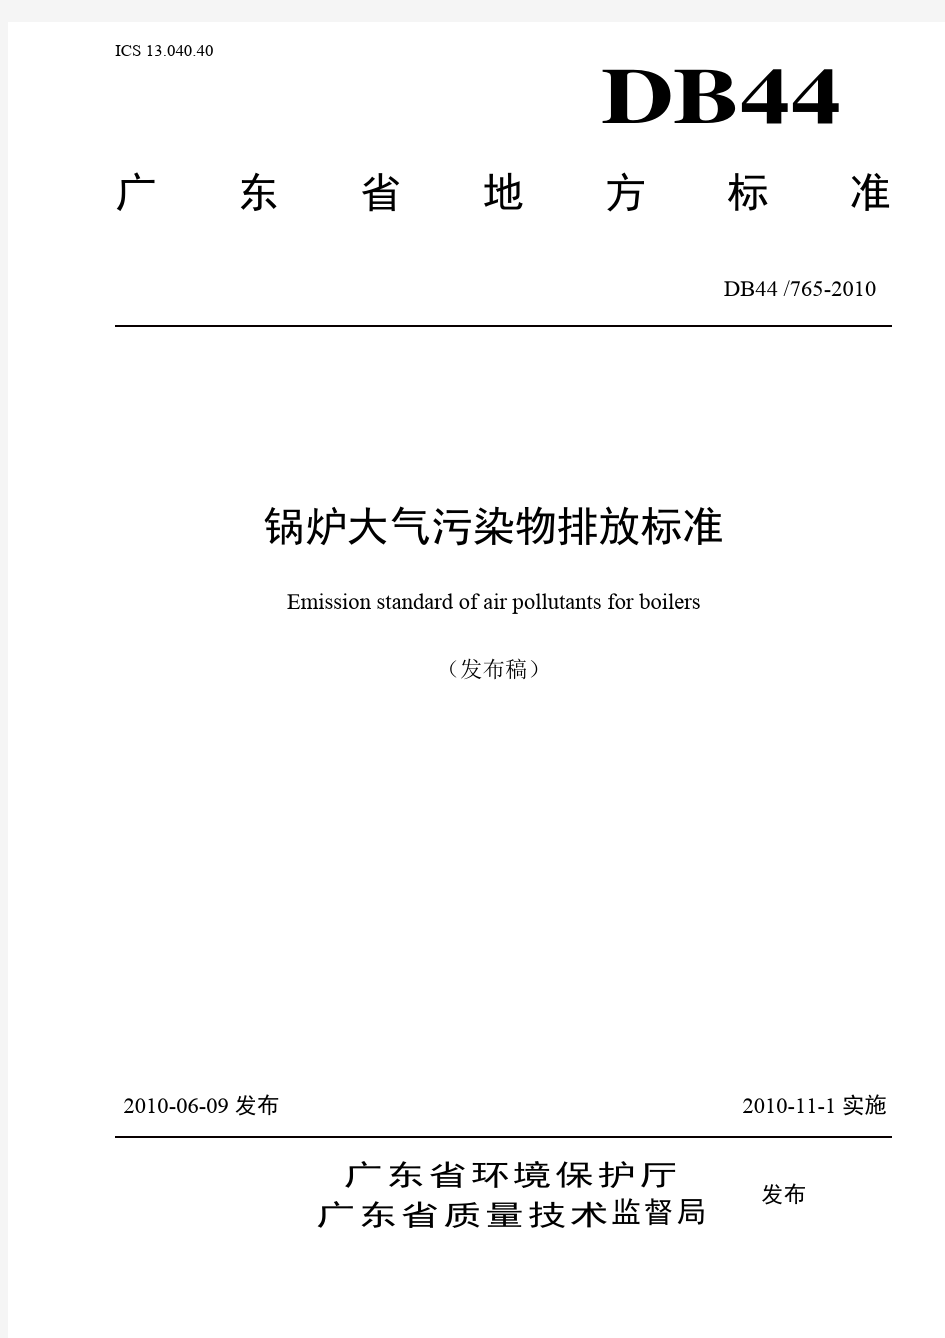 广东省地方标准《锅炉大气污染物排放标准》(DB 44_765-2010)